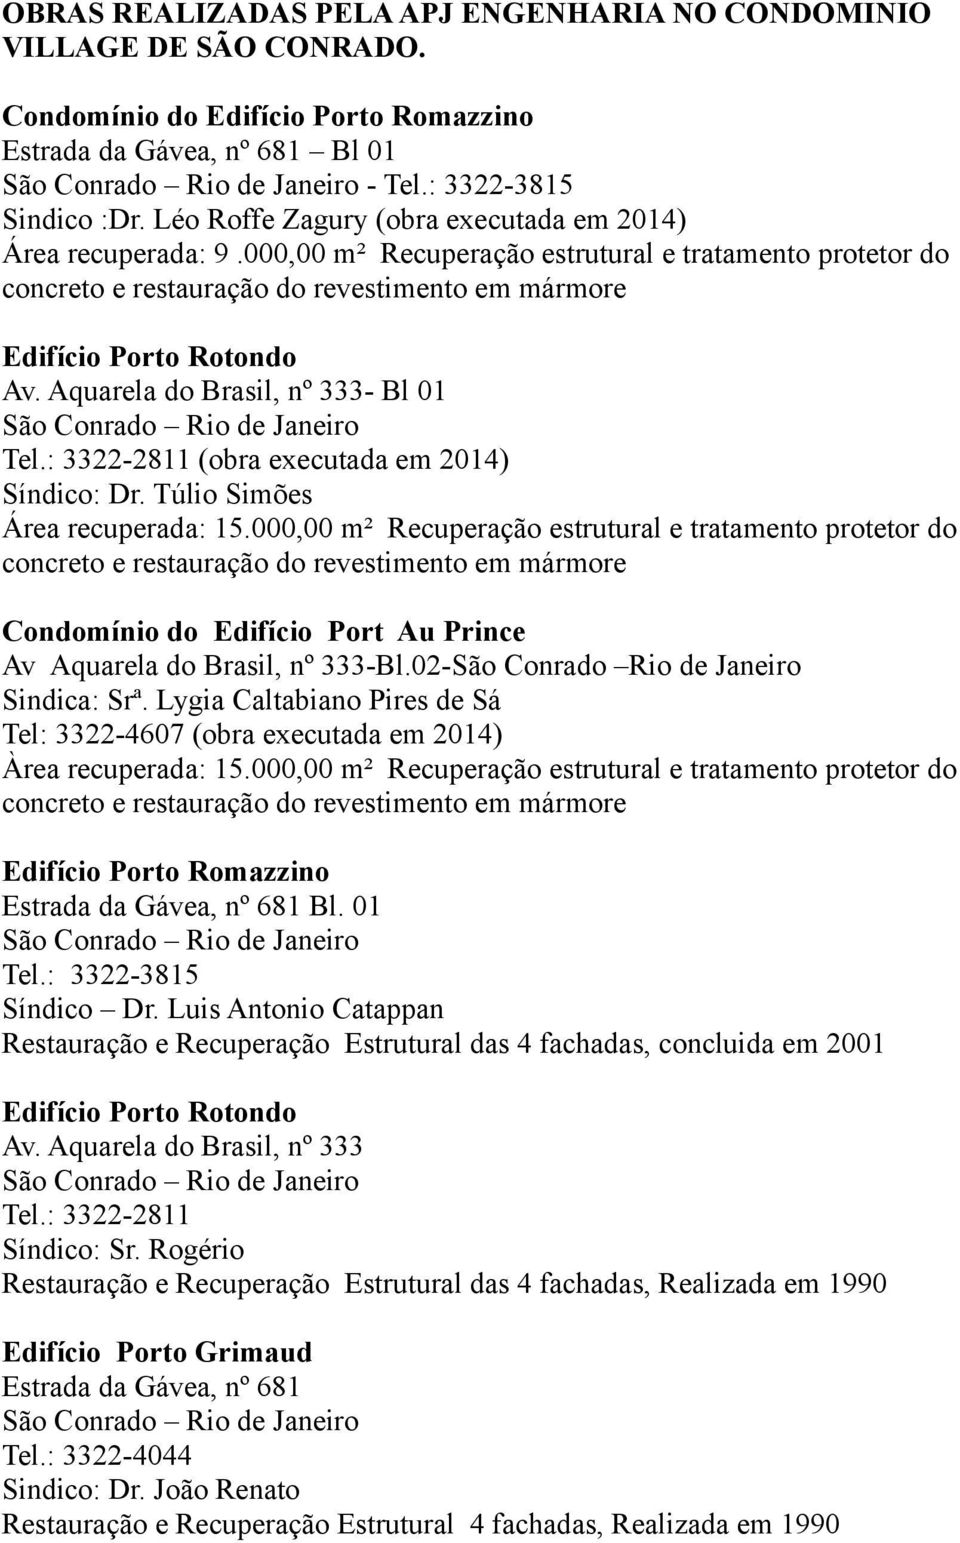 Aquarela do Brasil, nº 333- Bl 01 Tel.: 3322-2811 (obra executada em 2014) Síndico: Dr. Túlio Simões Área recuperada: 15.